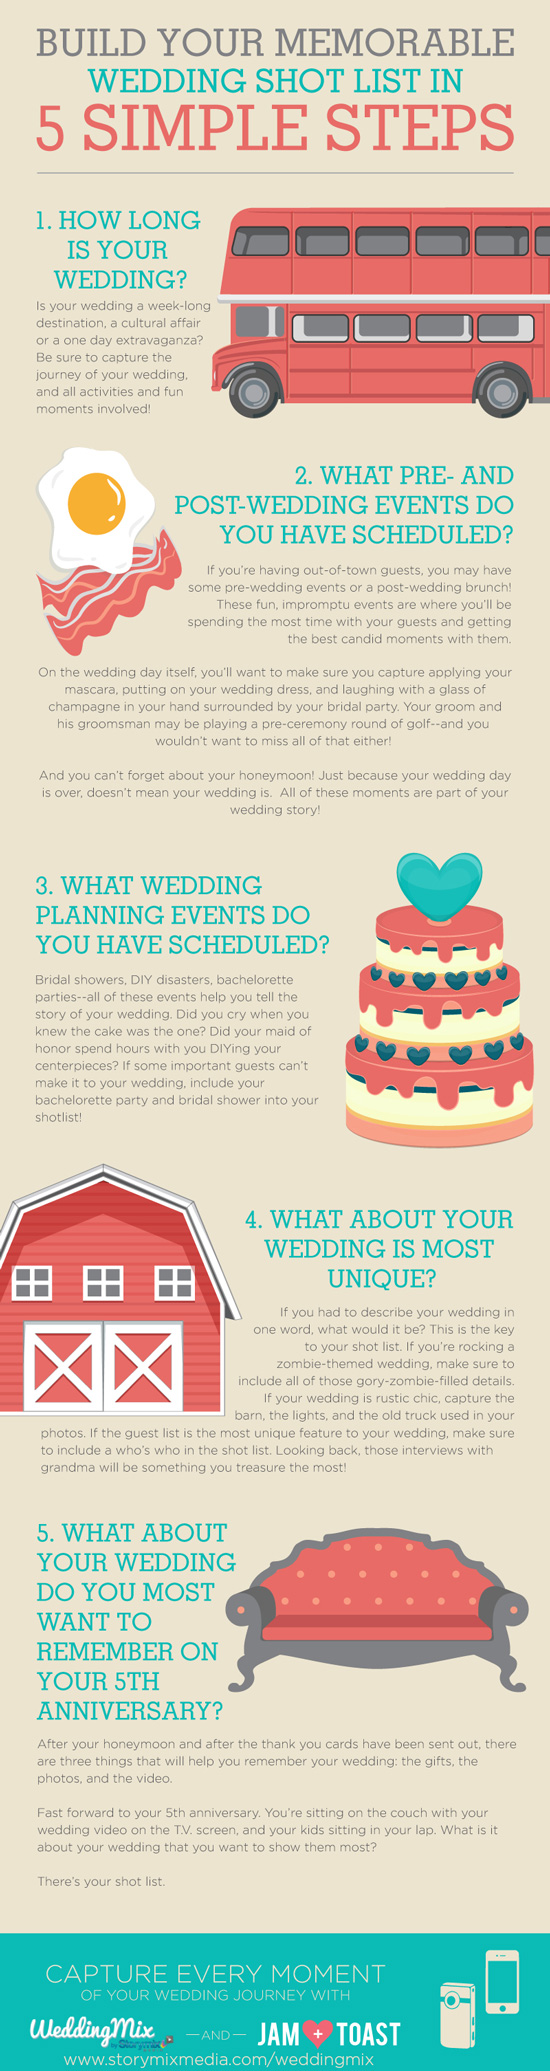 Wedding Photo CheckList - Infographic